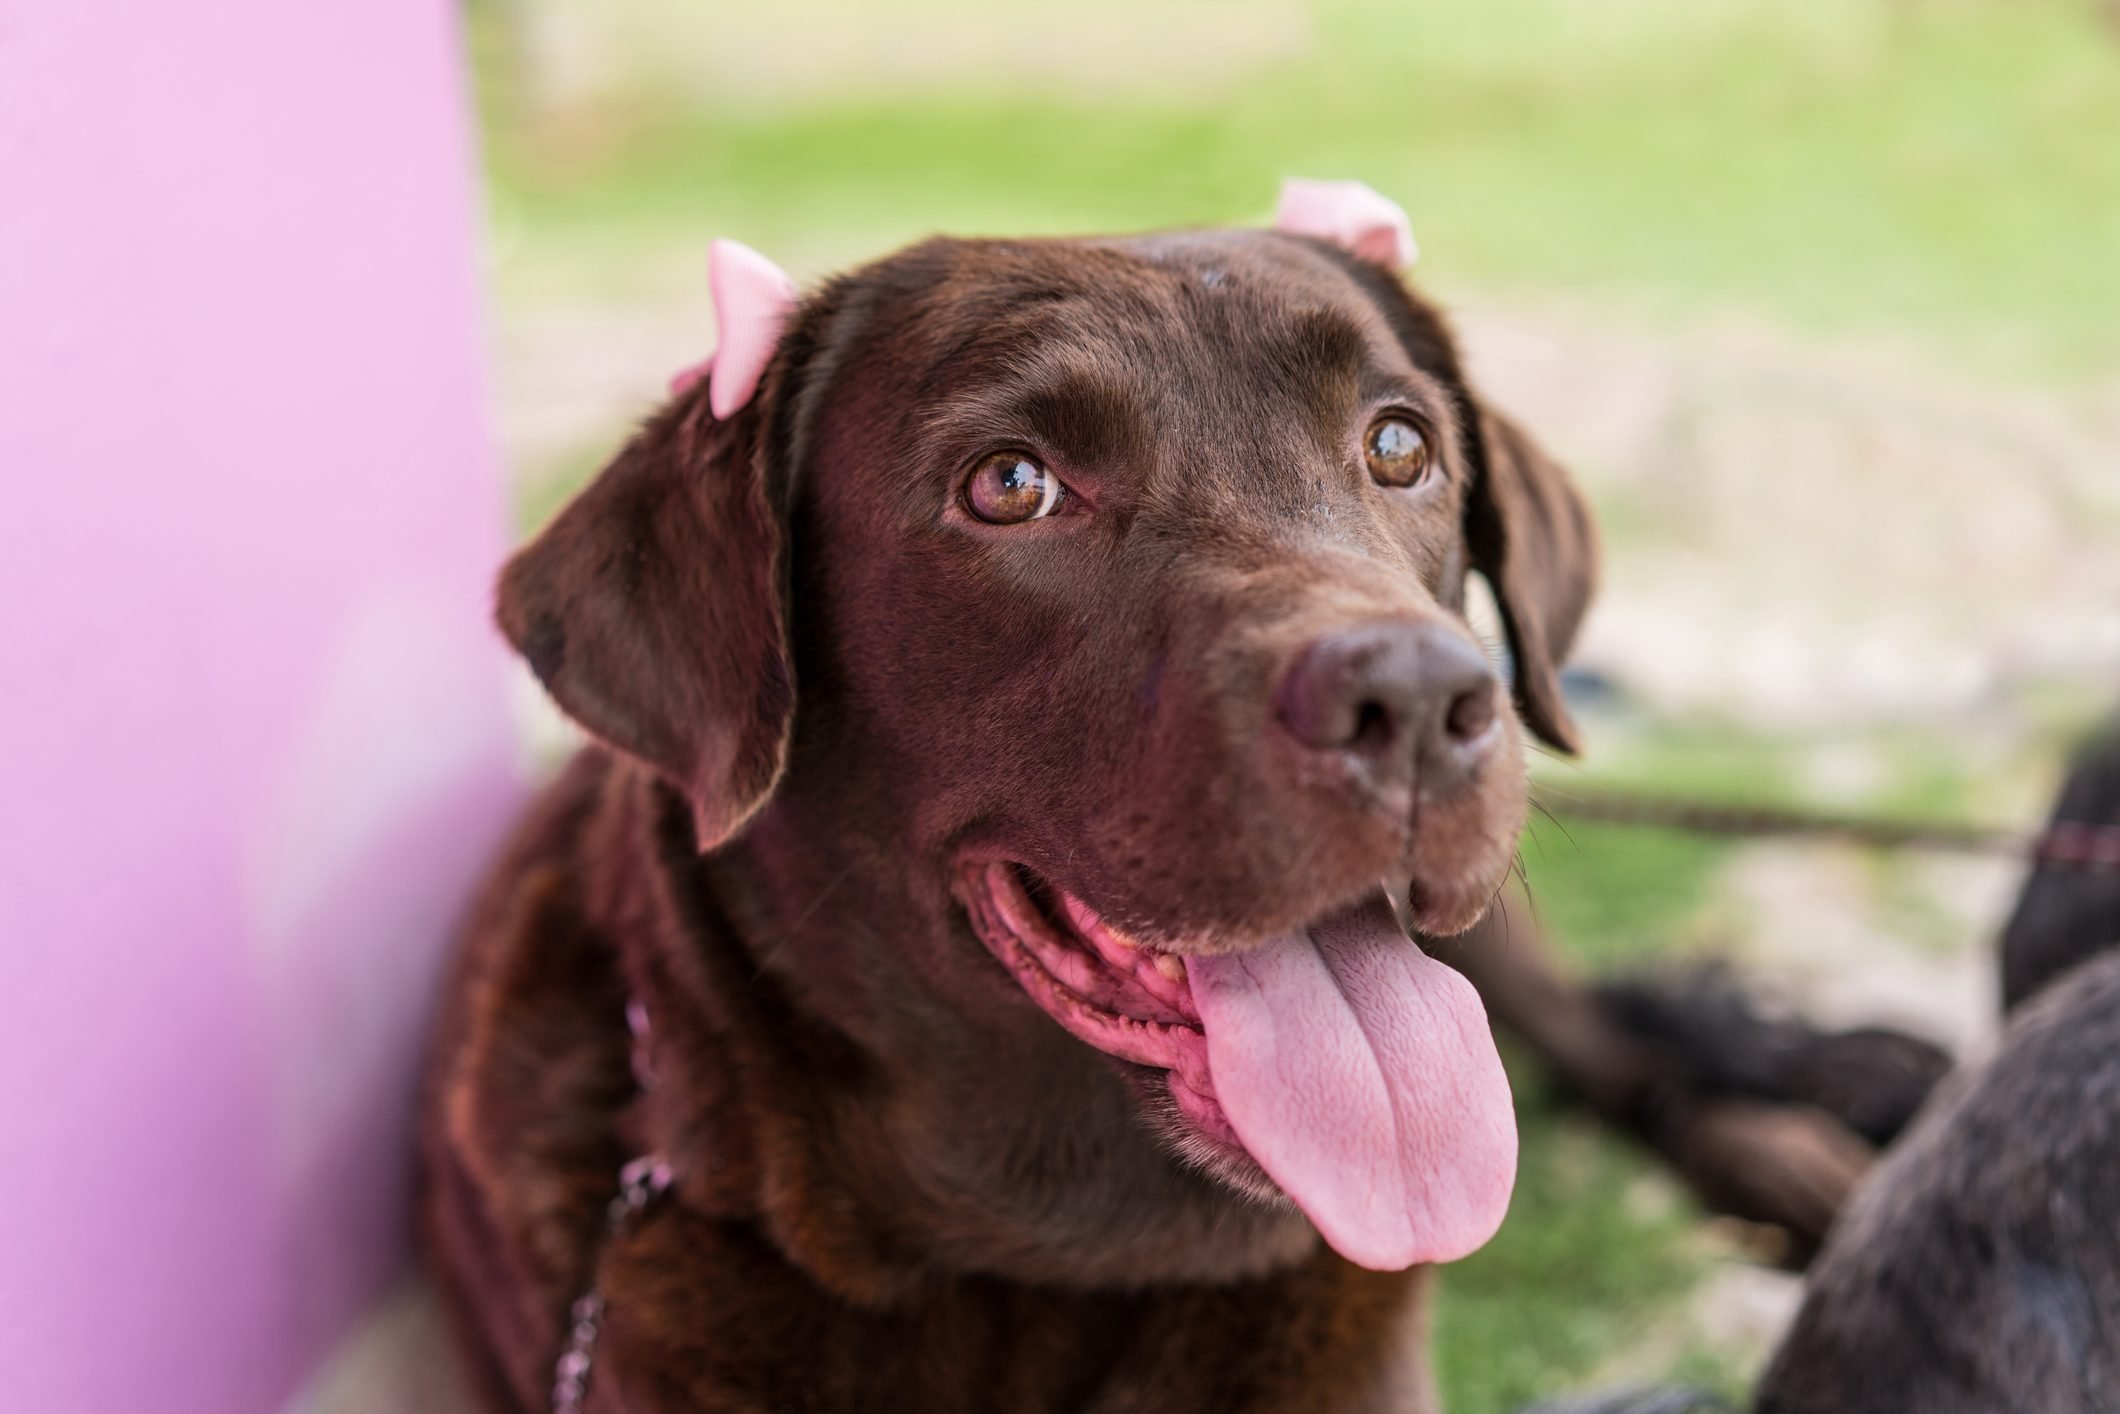 Labrador retriever with pink bows